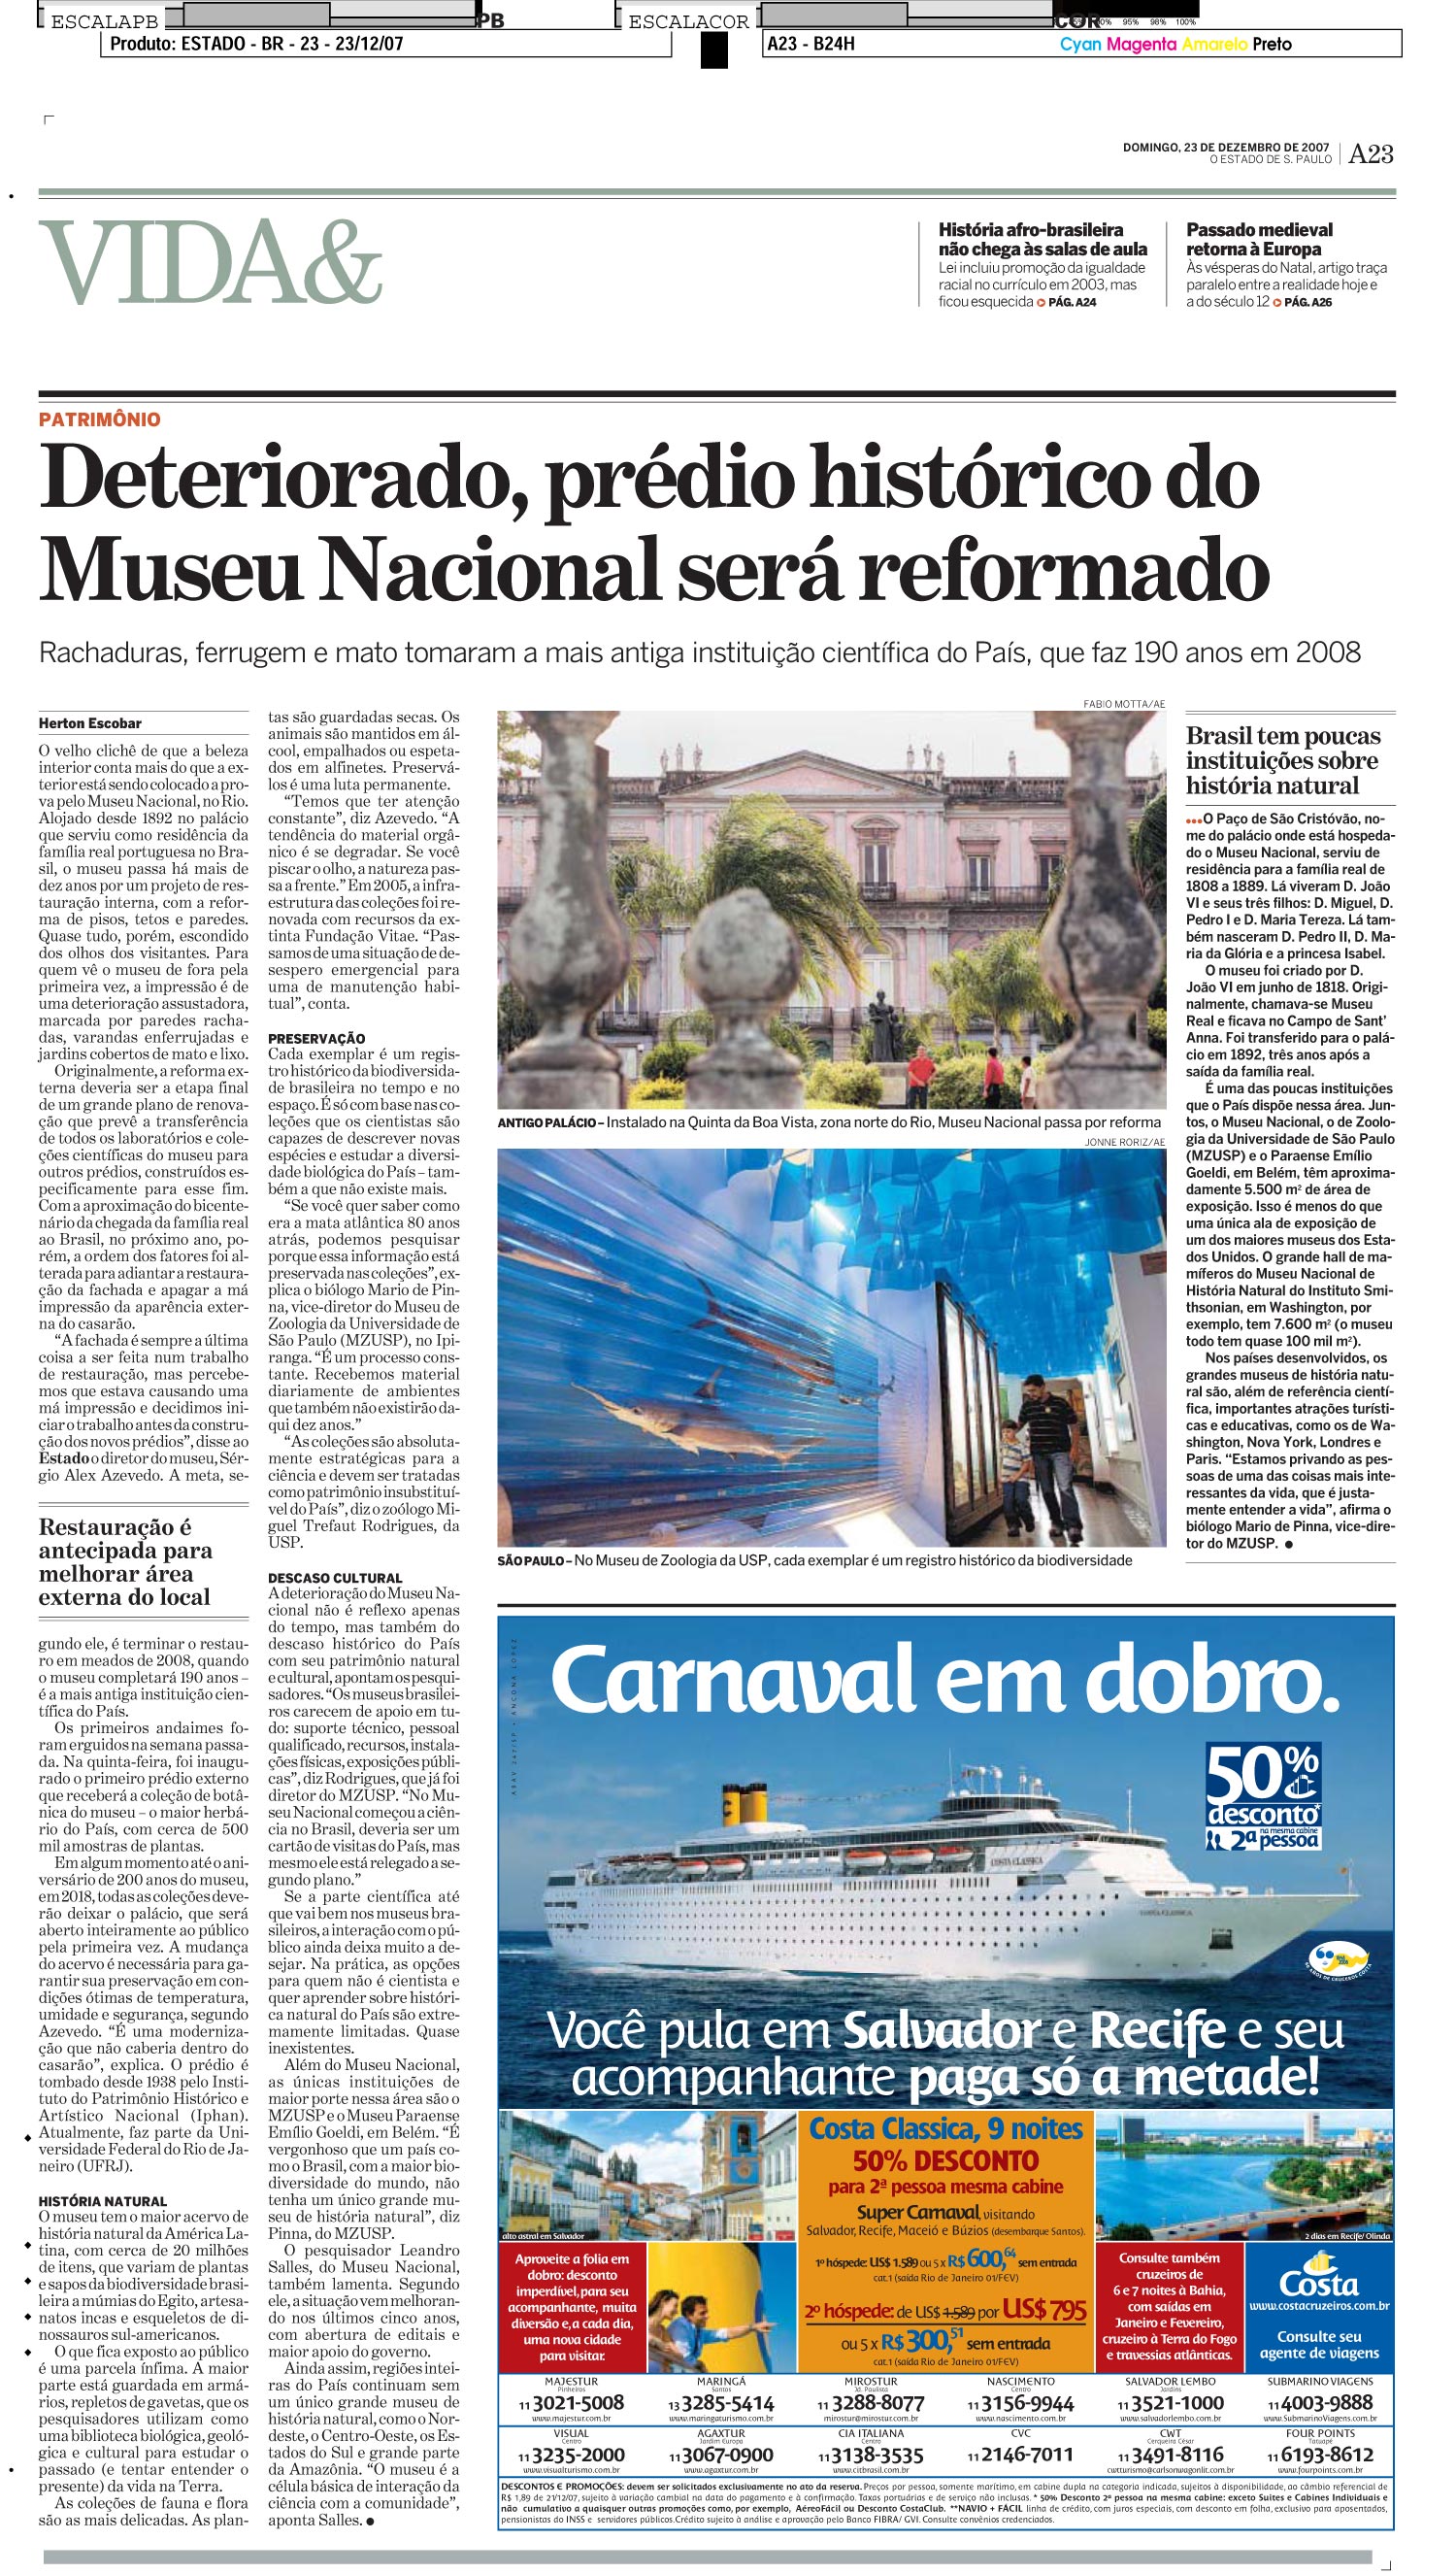 Deteriorado, prédio histórico do Museu Nacional será reformado